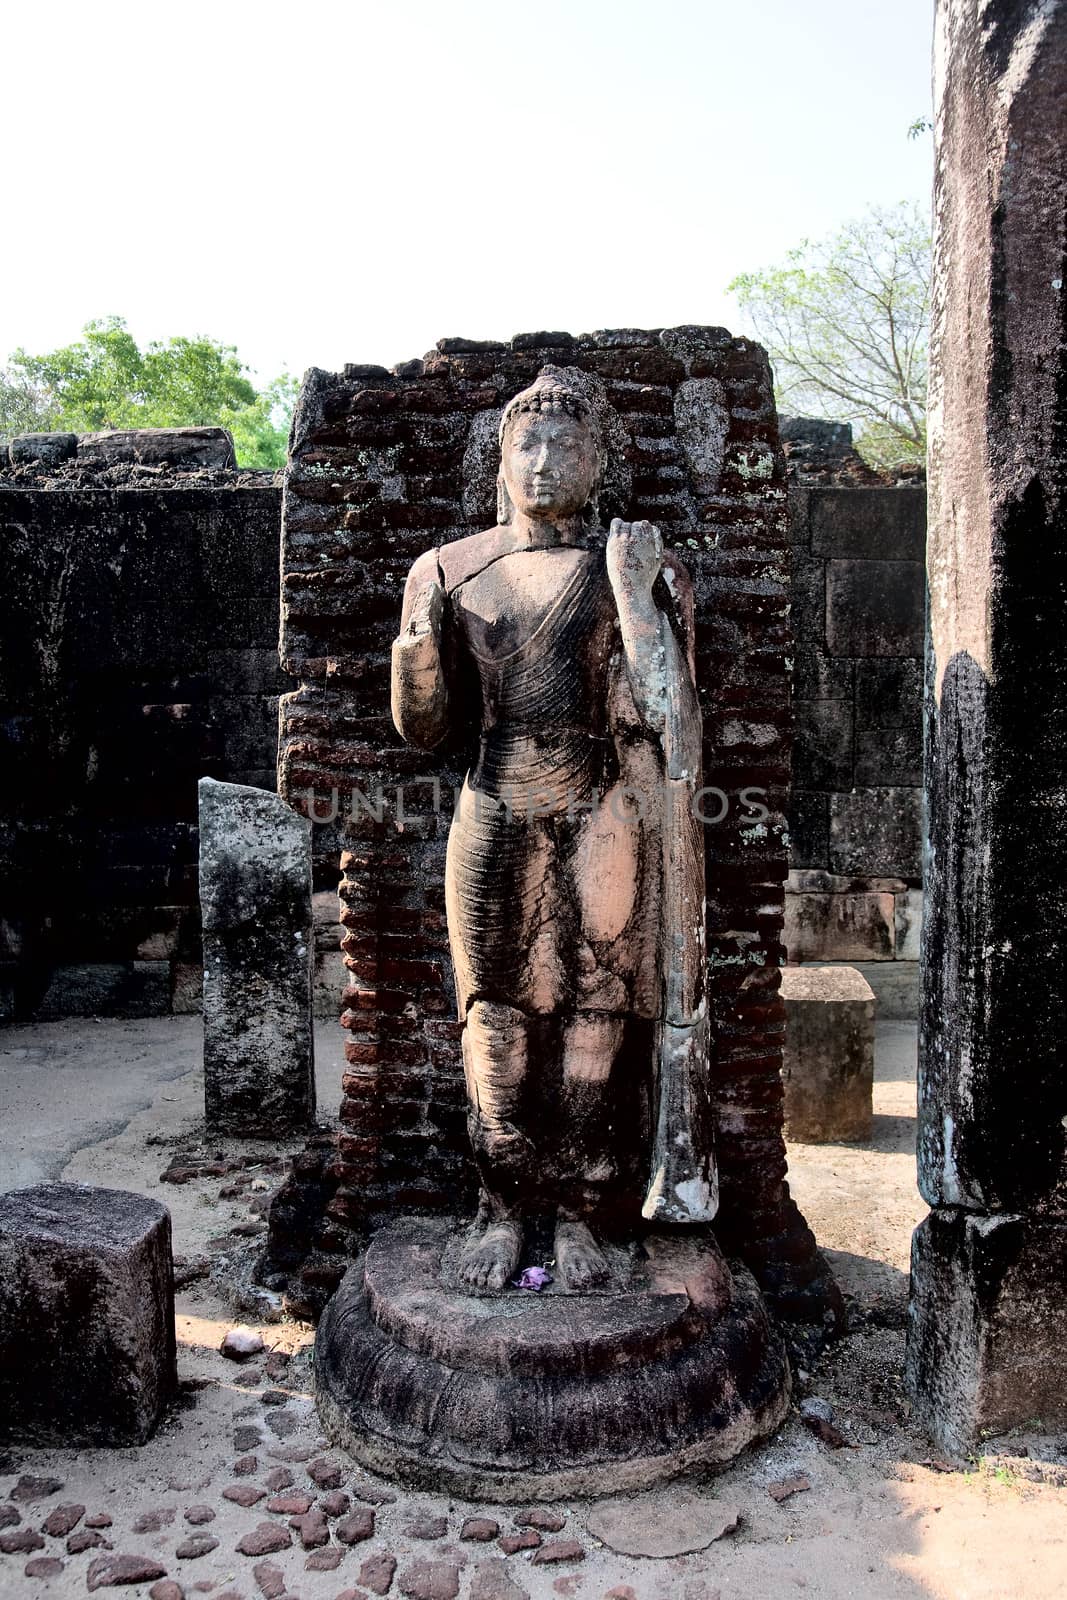 Ancient Buddha statue  in Polonnaruwa - vatadage temple, UNESCO World Heritage Site in Sri Lanka 